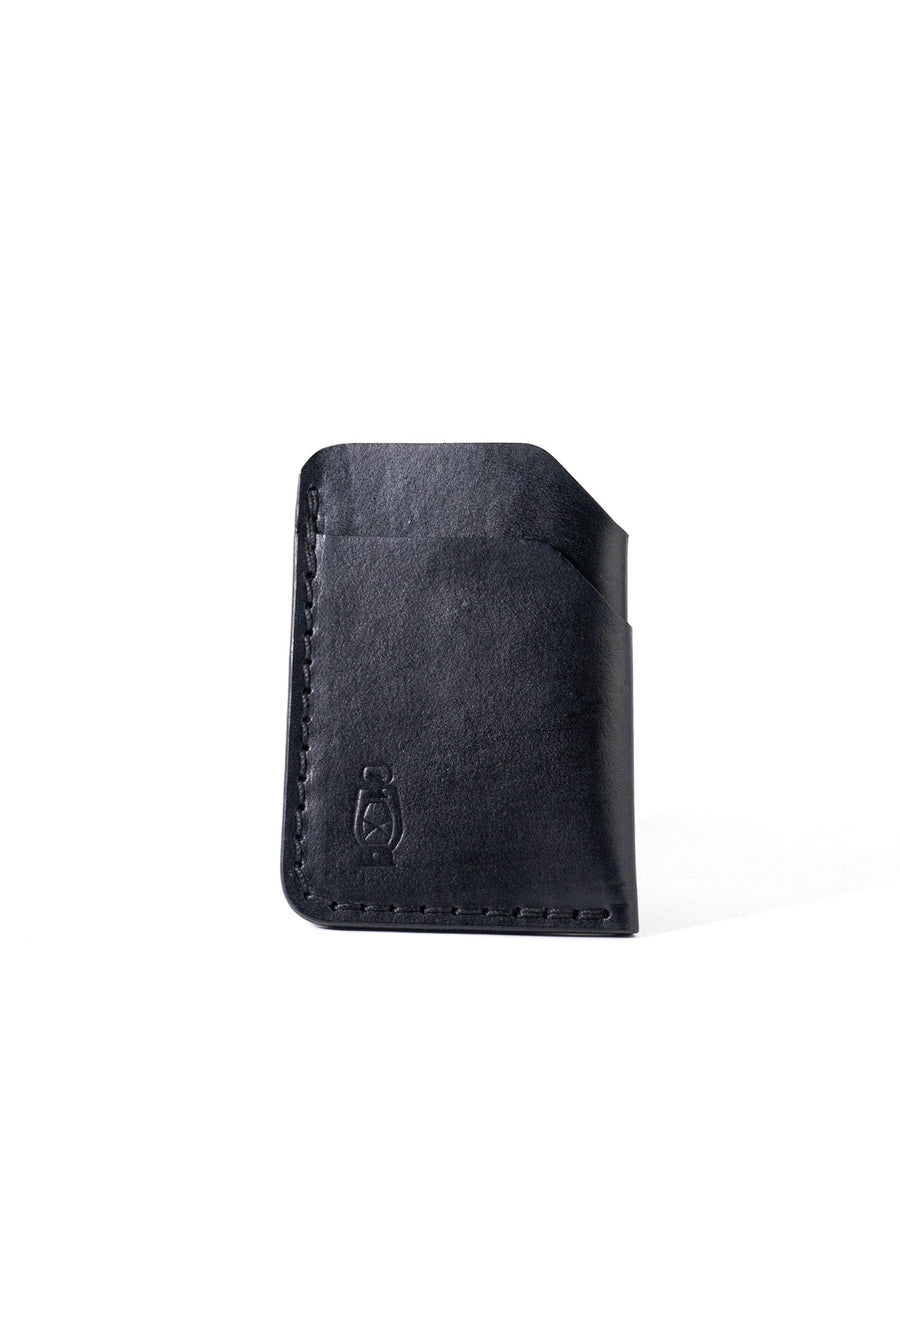 Rustler Wallet by Dark Forest USA